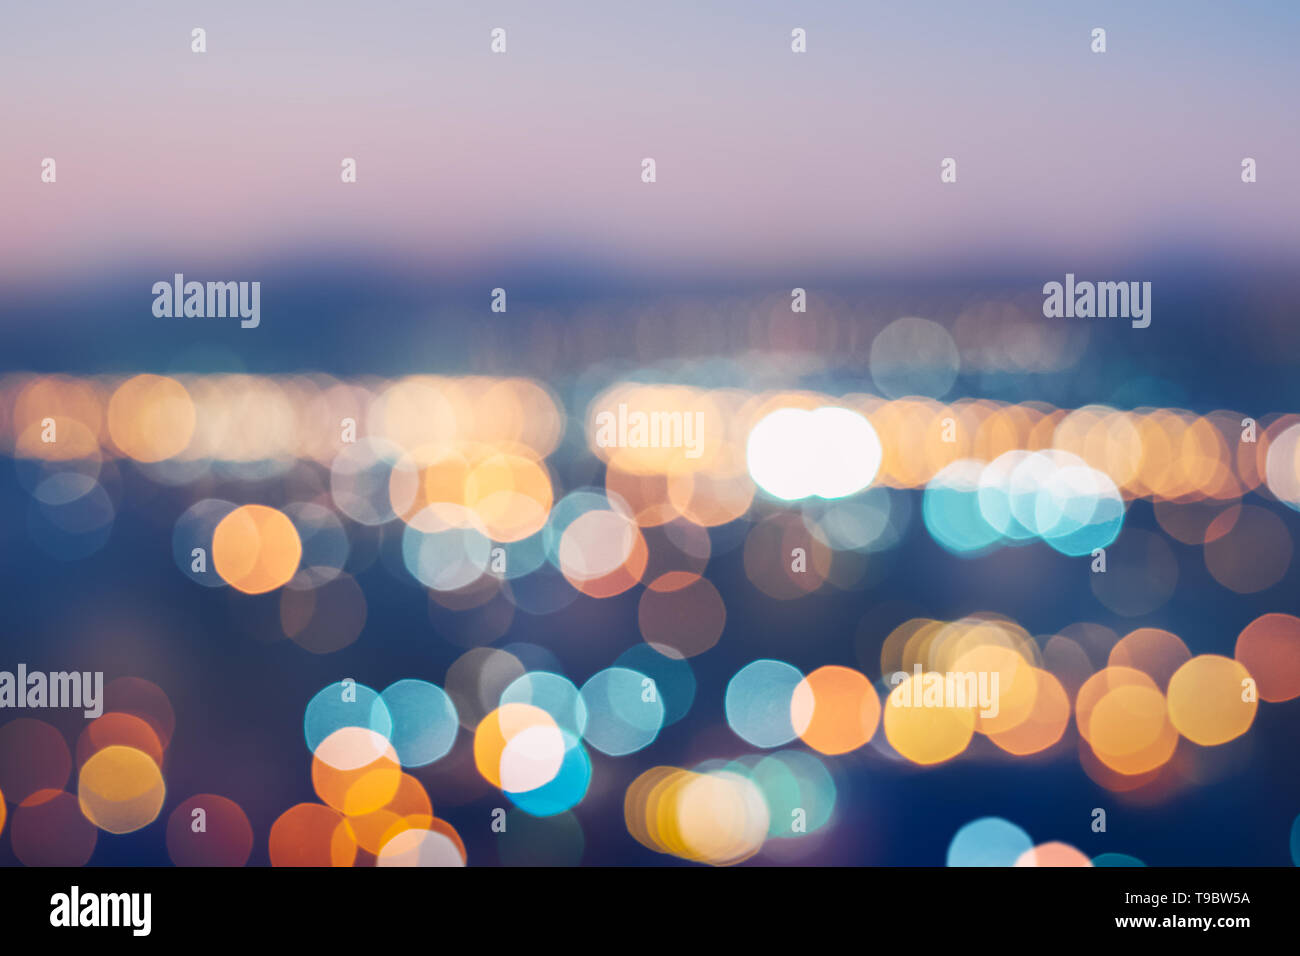 City Lights verschwommen Abstract Background - Nacht Zeit Stadt mit bunten Licht Abstrakt bokeh in Stadt bunte Schöne in der Nacht Stockfoto